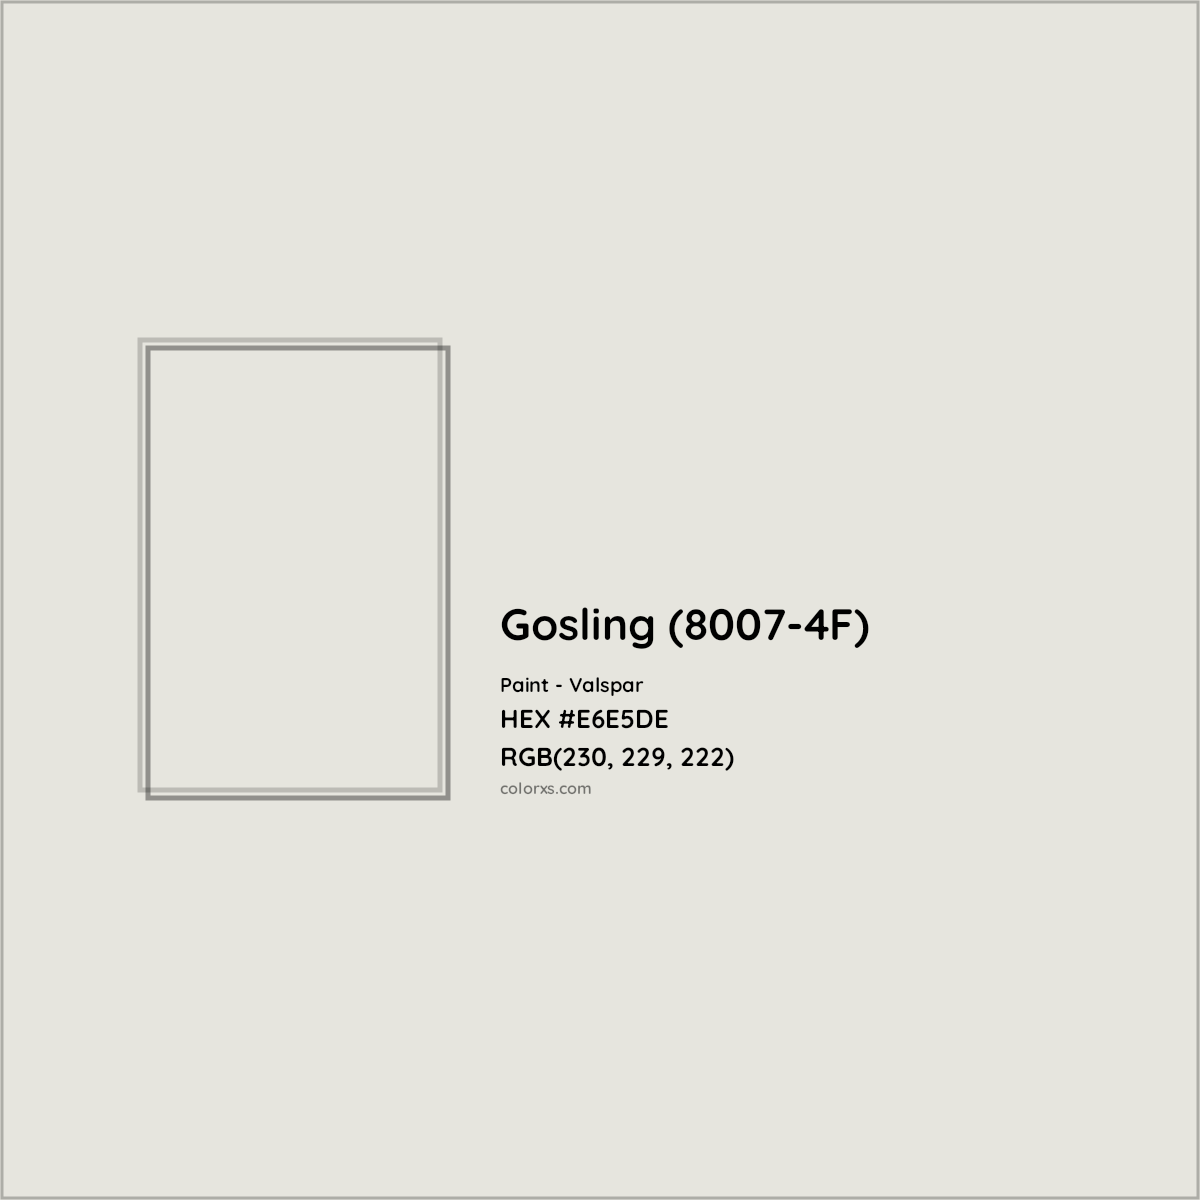 HEX #E6E5DE Gosling (8007-4F) Paint Valspar - Color Code